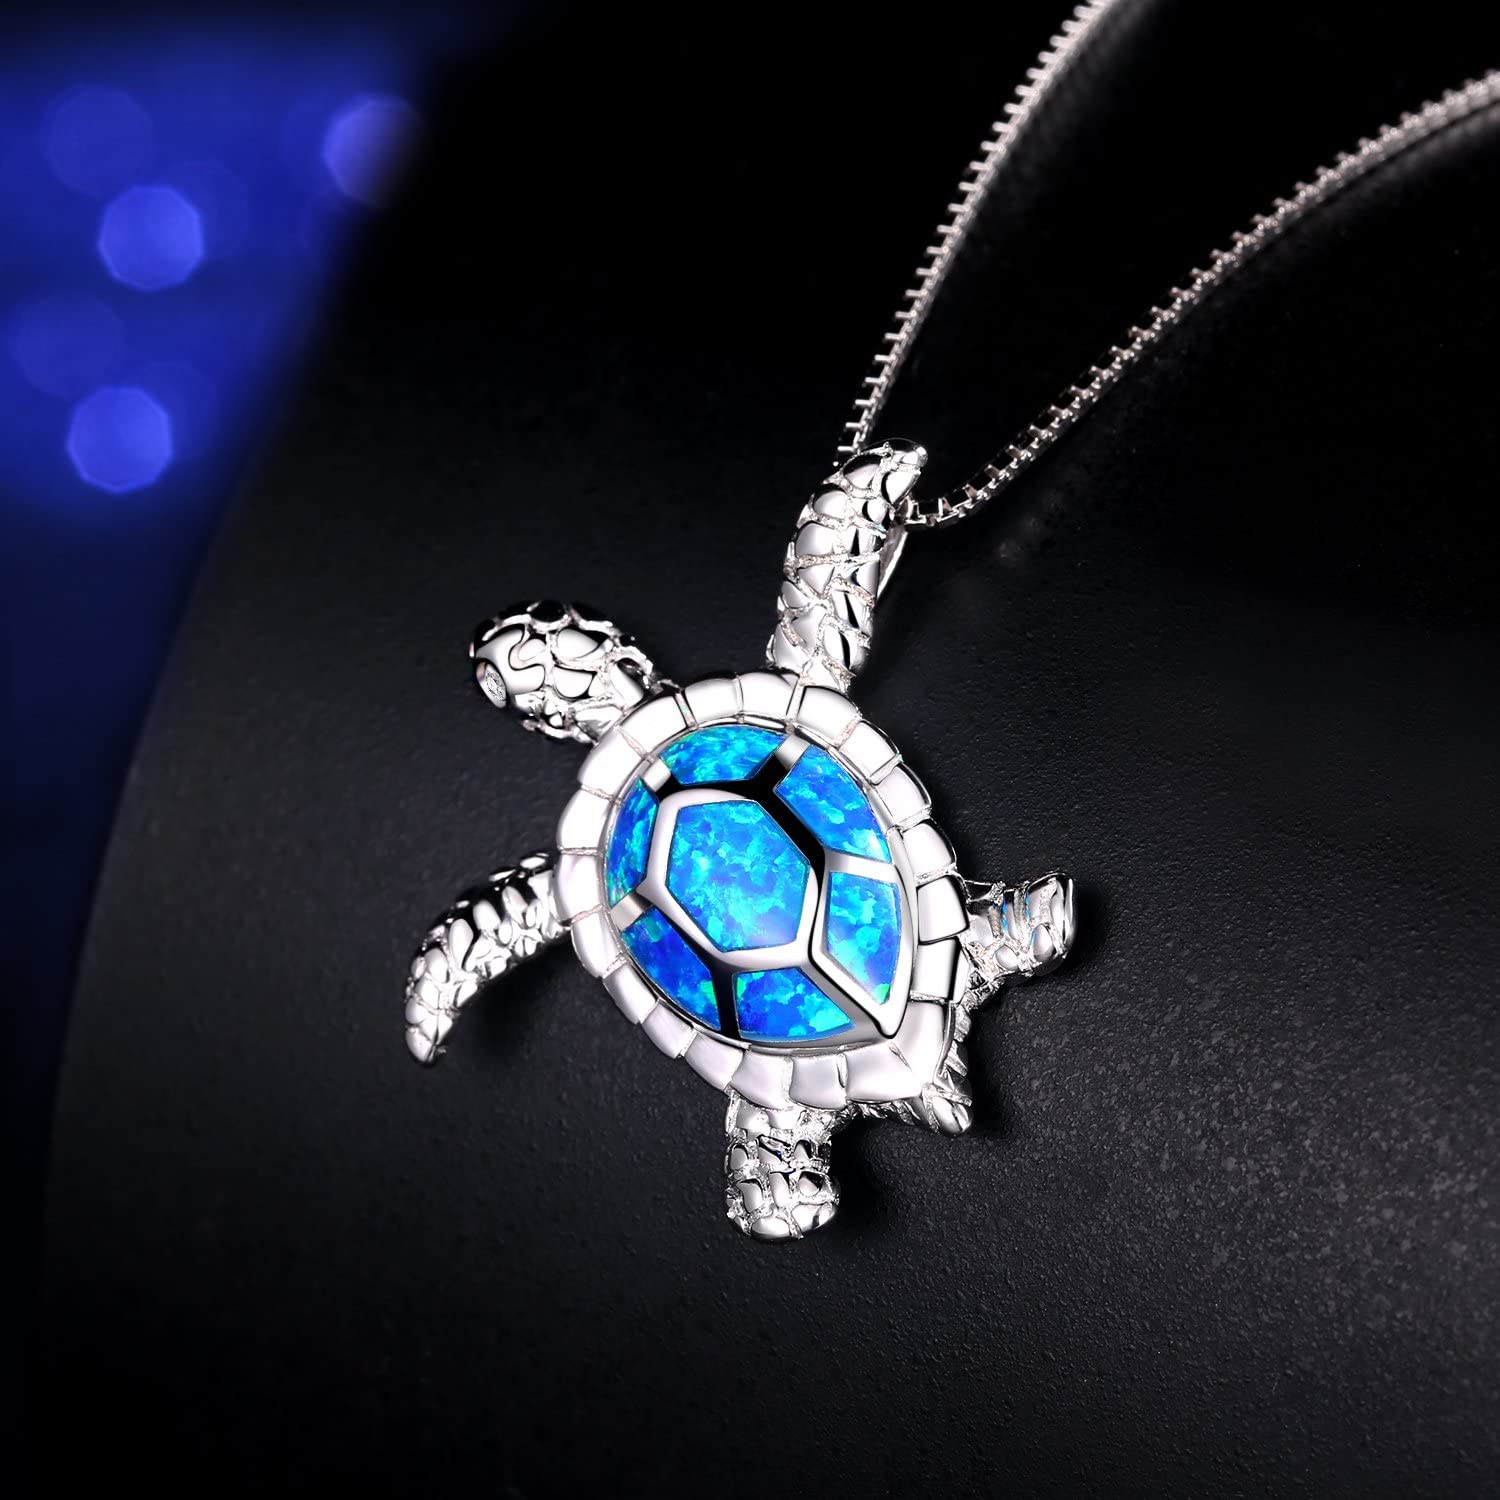 Blue Turtle Necklace & Pendant - 200007763:201336100